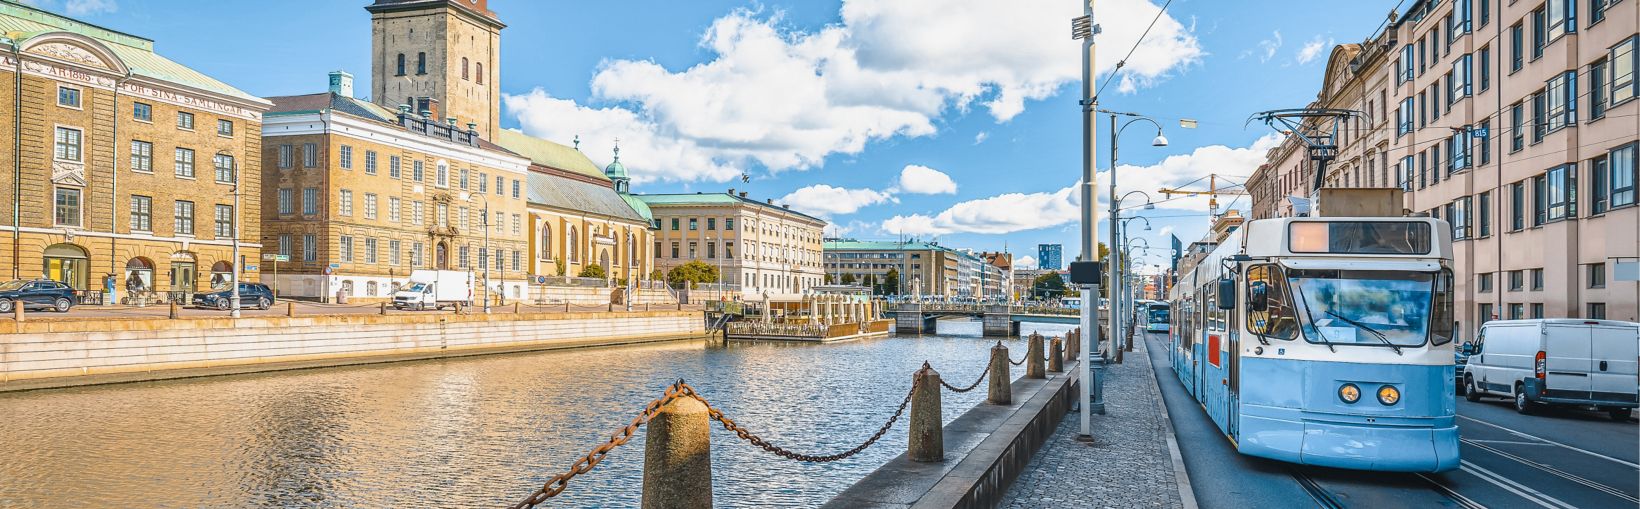 Gēteborgas pilsētas ielu arhitektūras skats, Vastra Gotaland apriņķis Zviedrijā